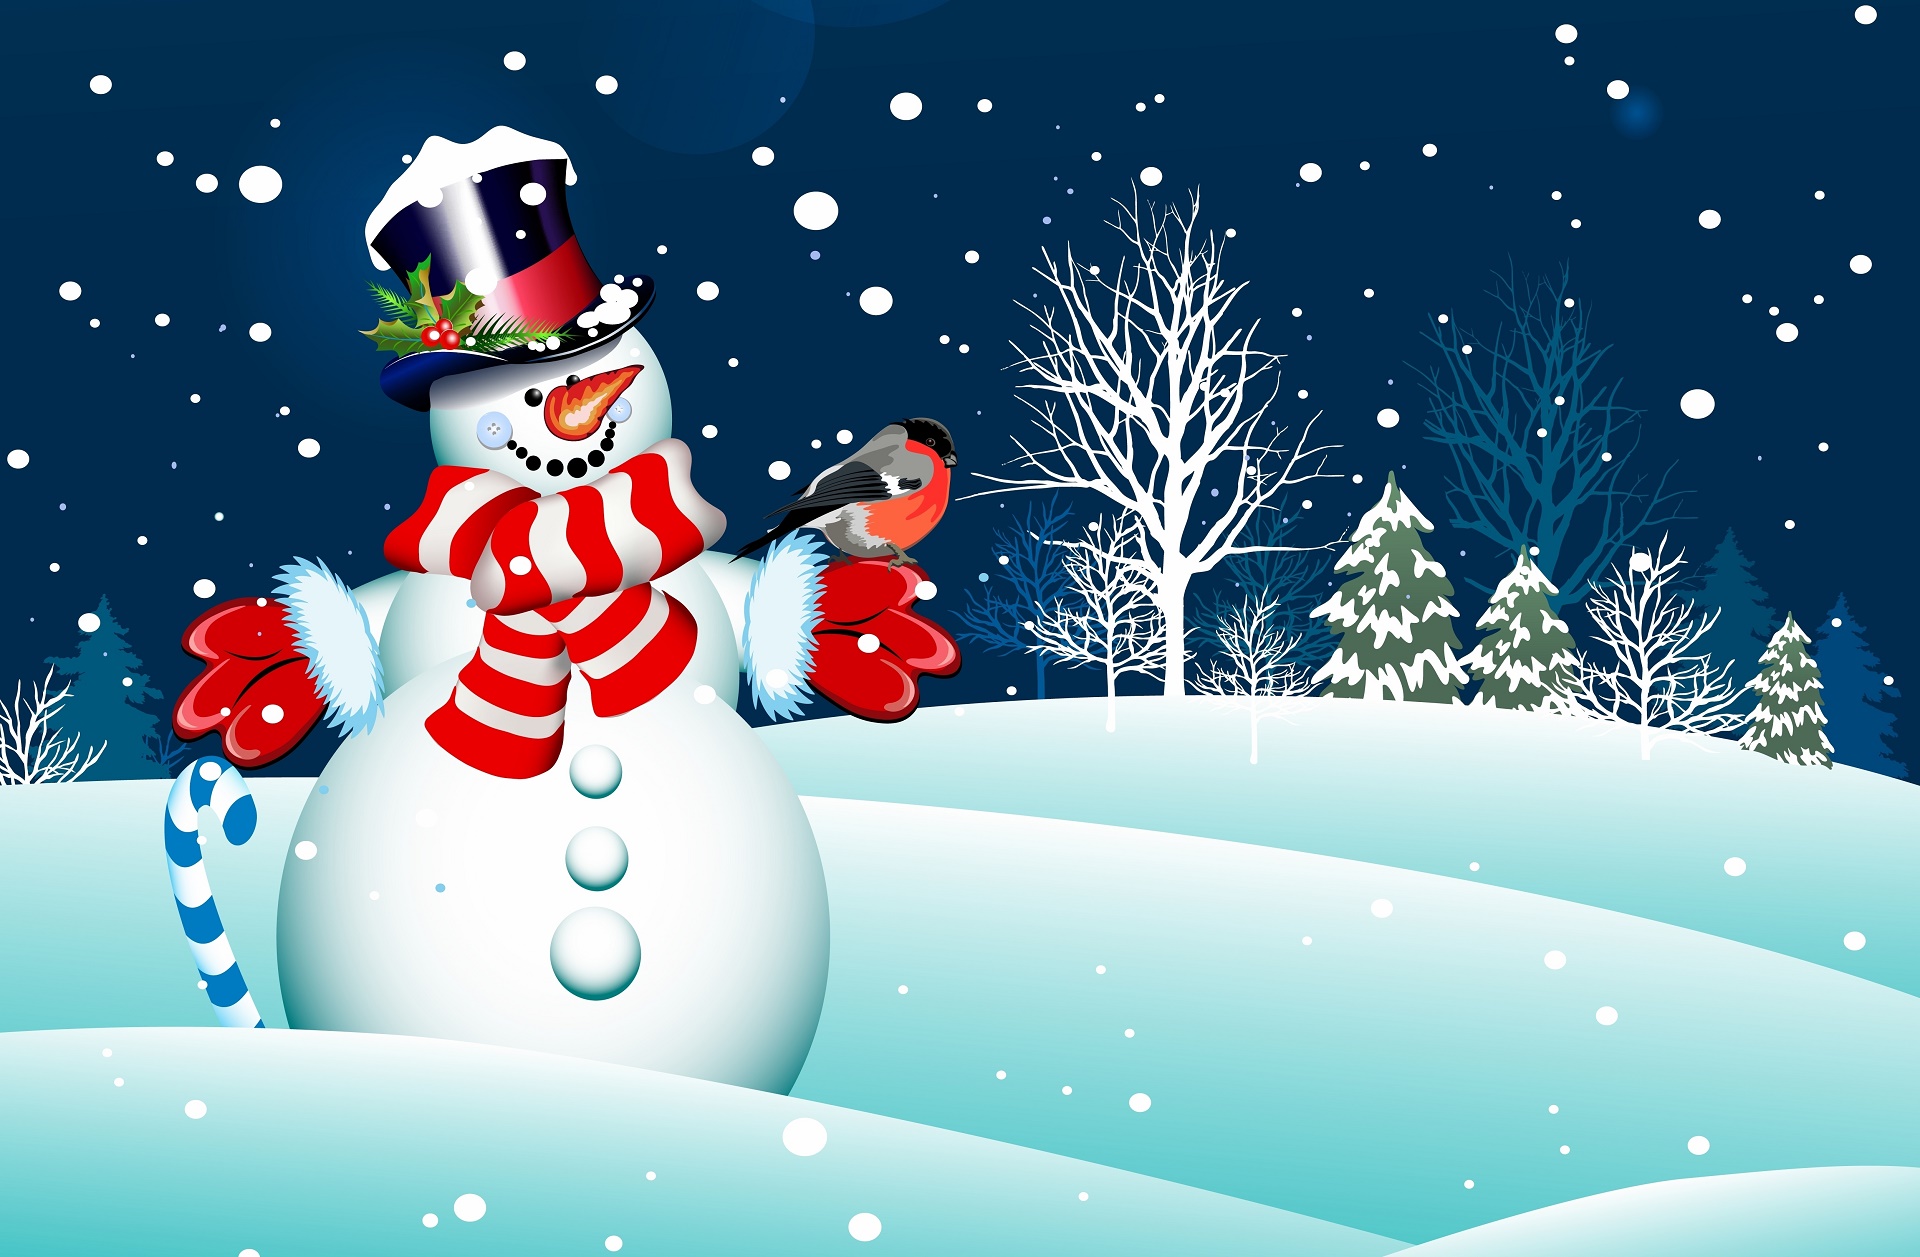 눈사람 벽지 hd,눈사람,겨울,눈,크리스마스 이브,크리스마스